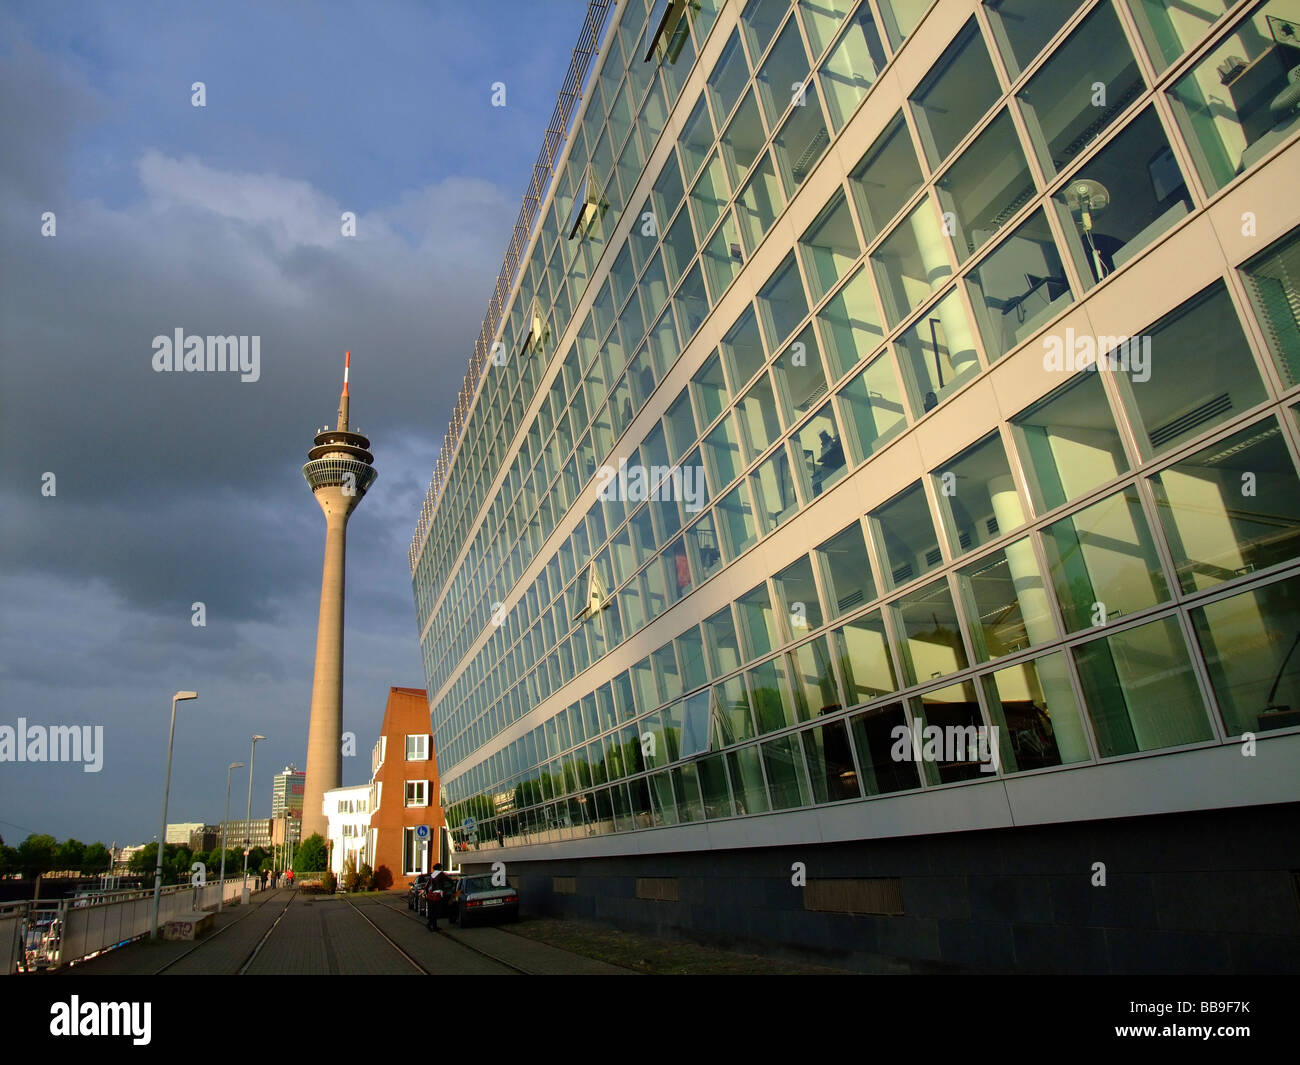 Neuer Zollhof Gebäude von dem Architekten Frank Gehry im Medienhafen - Düsseldorf - Deutschland Stockfoto